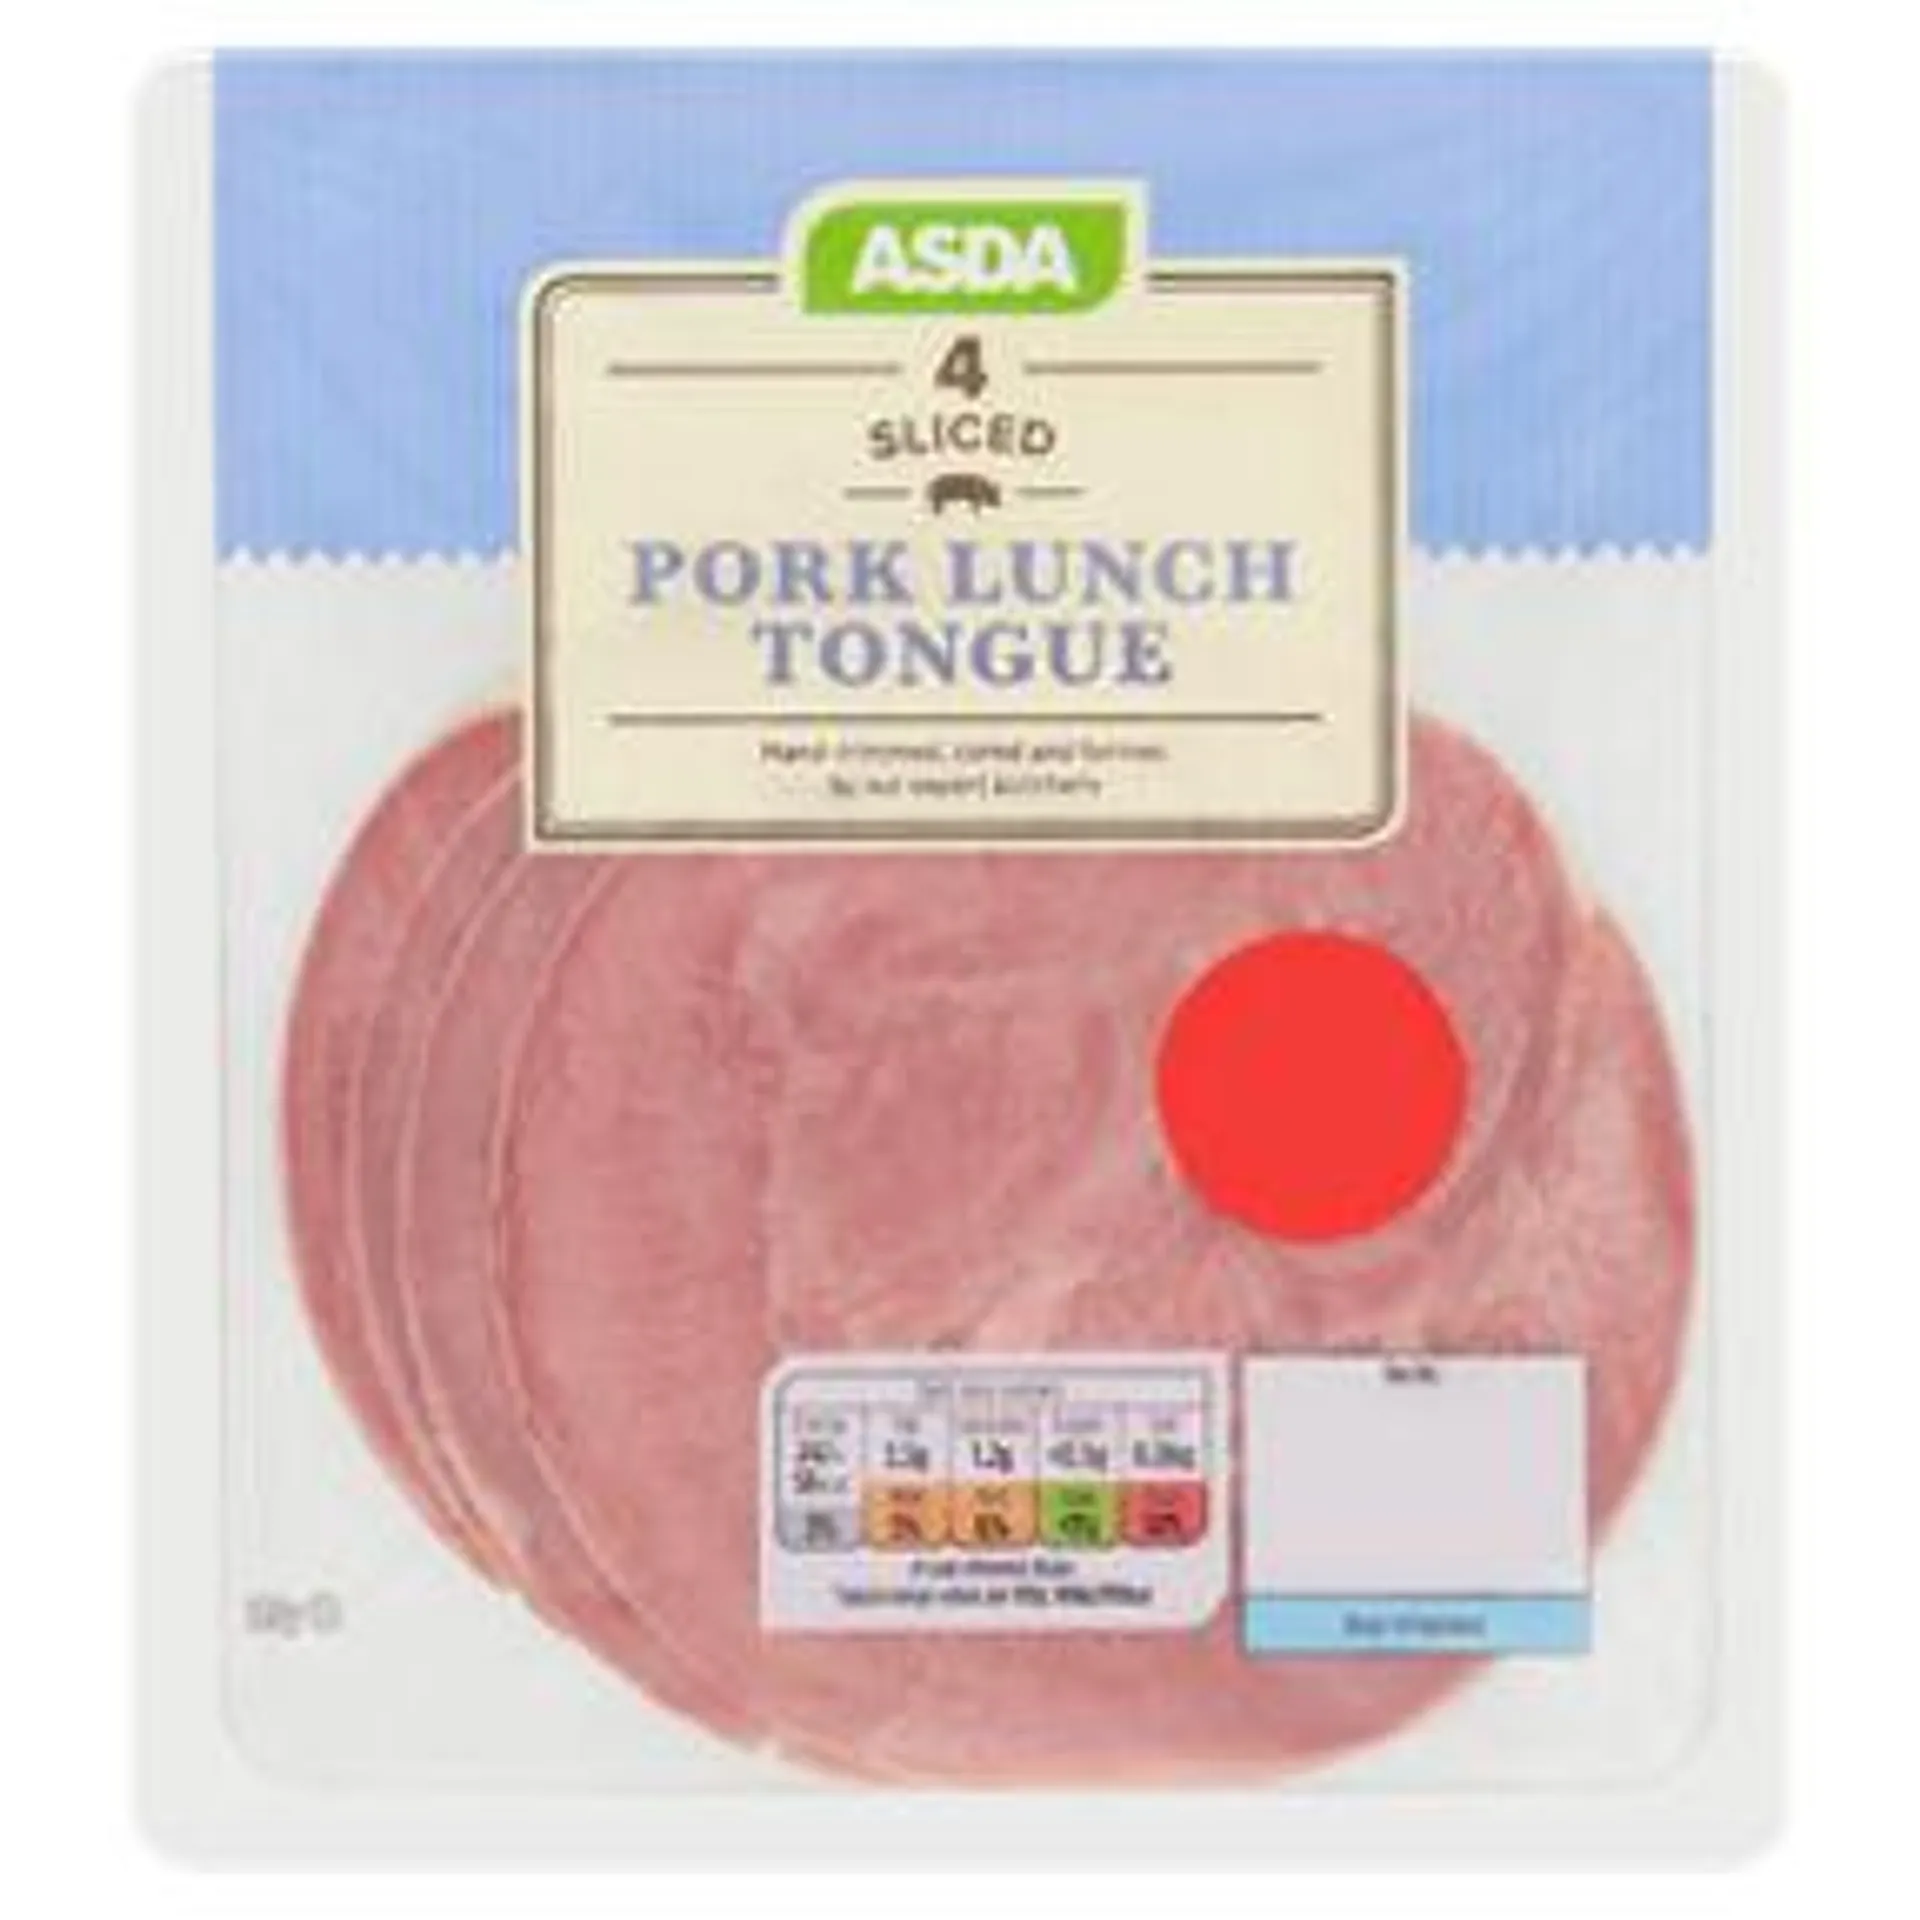 ASDA Thick Sliced Pork Lunch Tongue